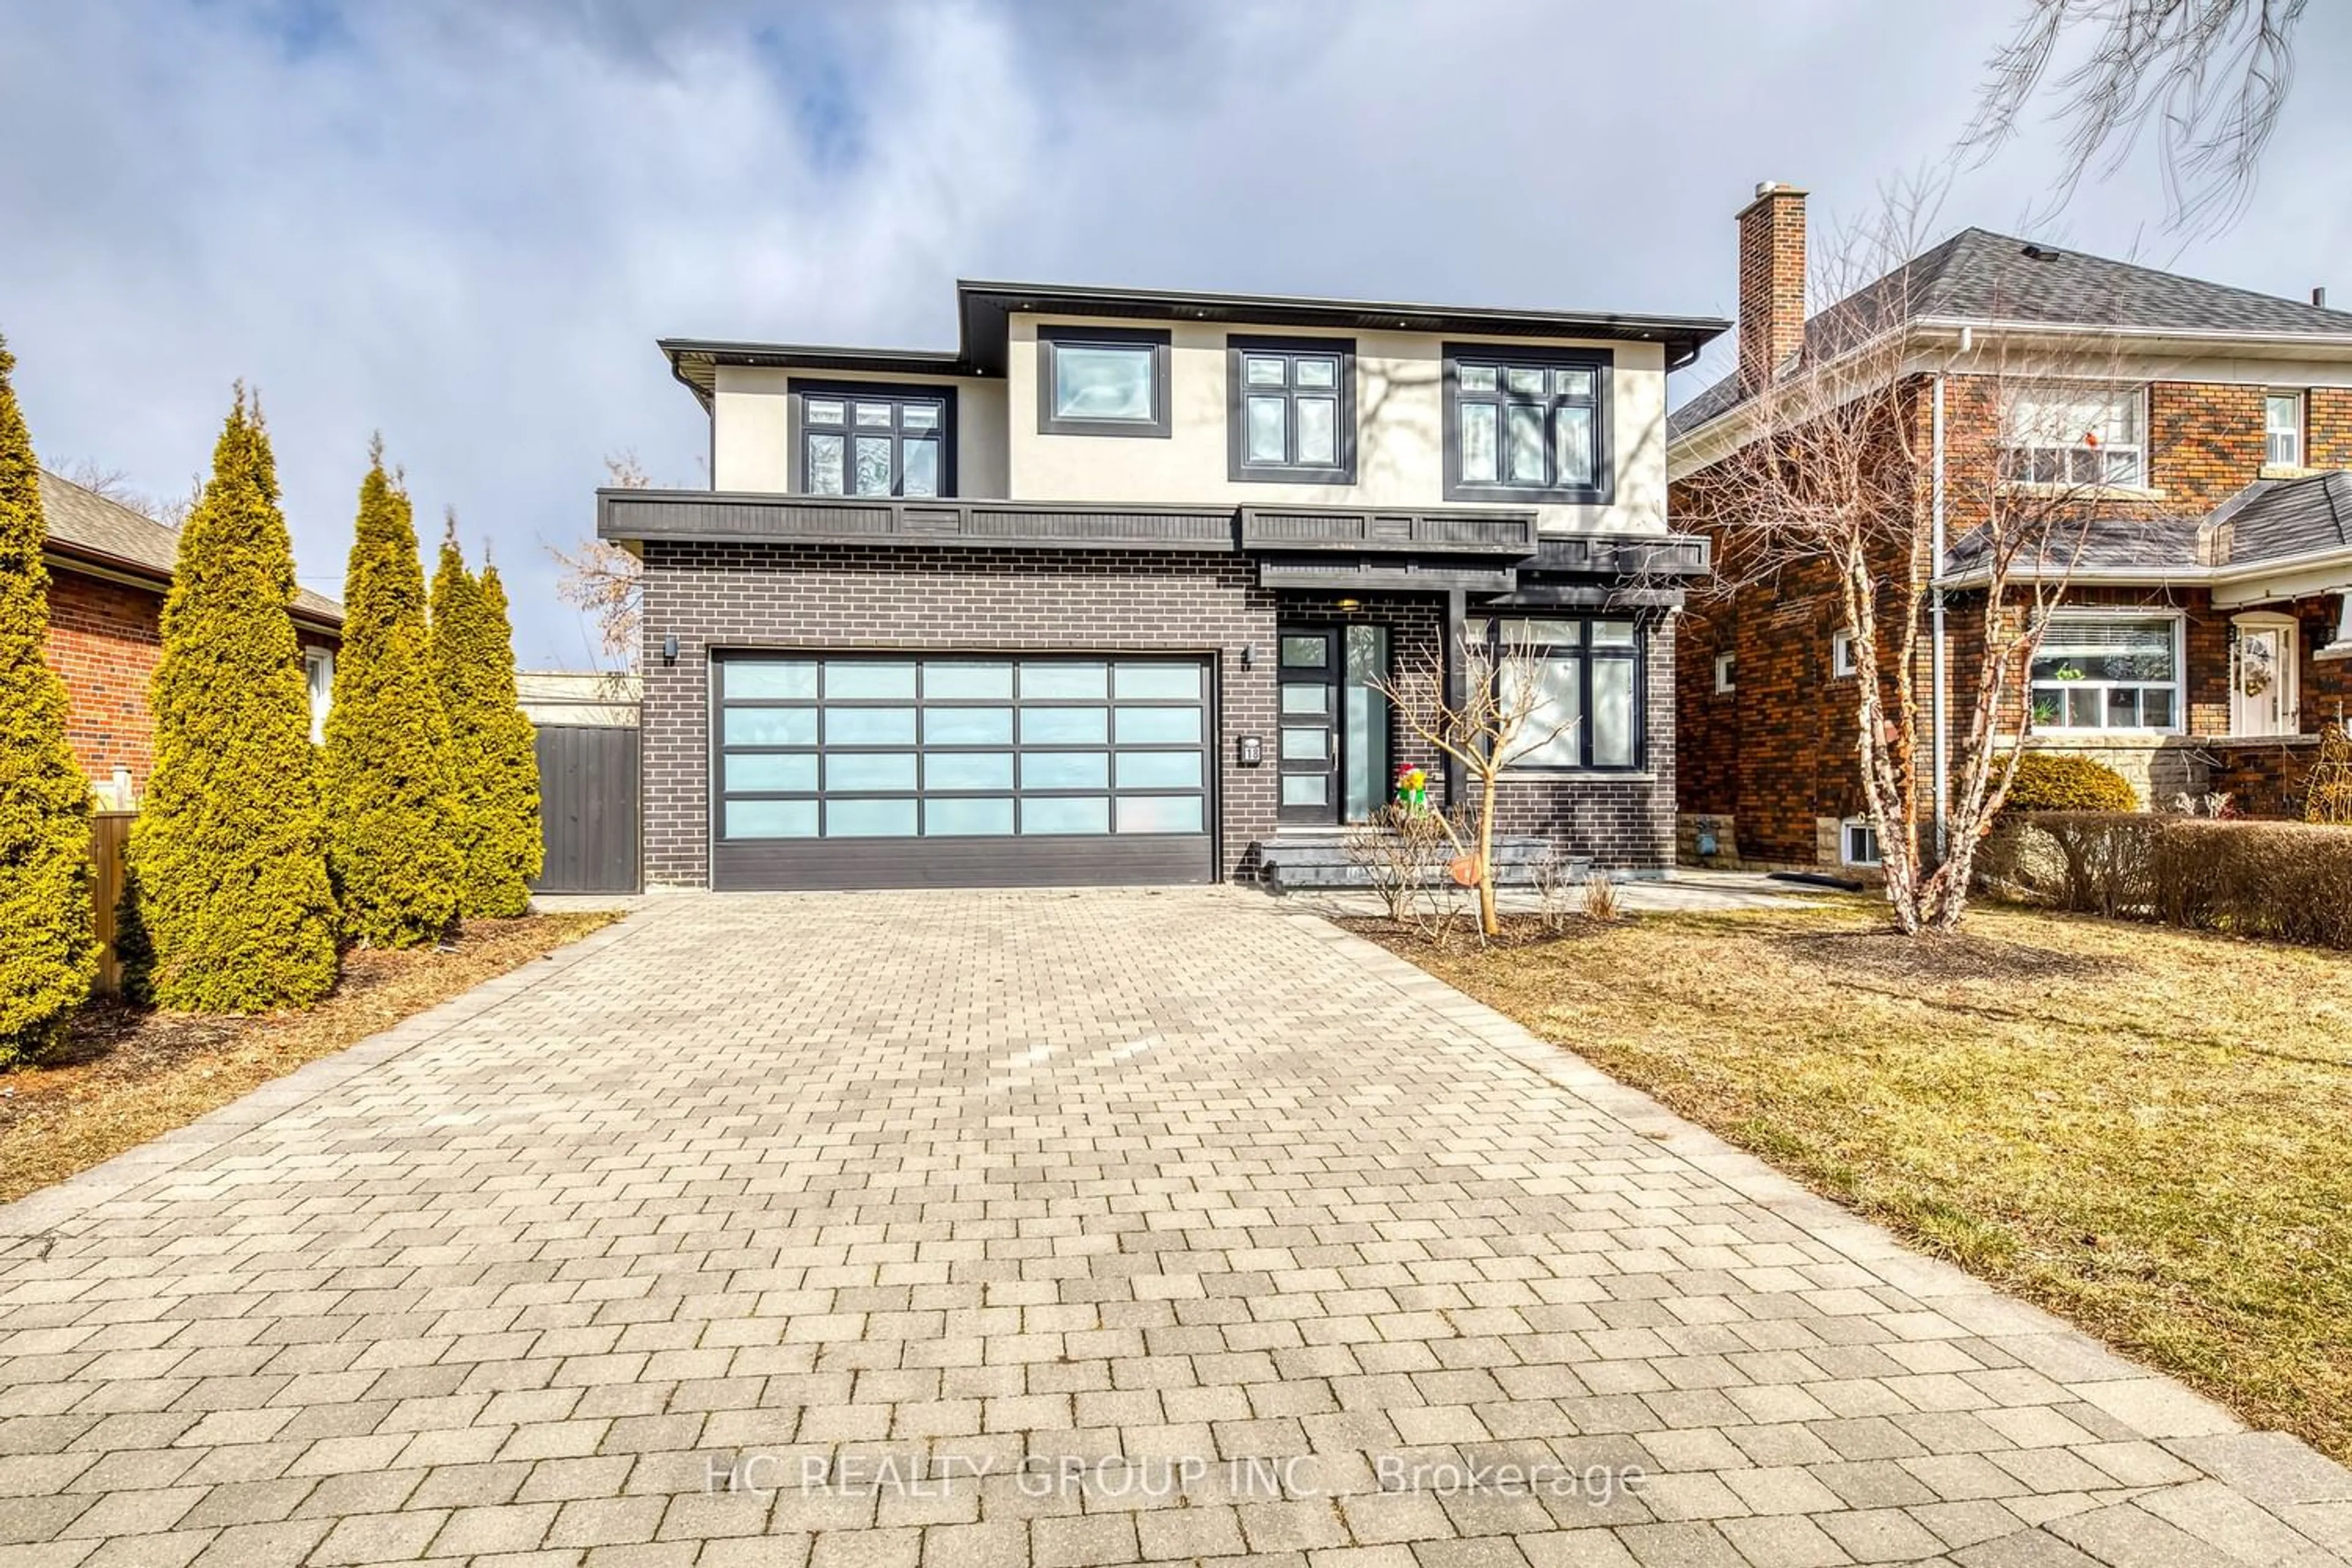 Home with brick exterior material for 18 Ash Cres, Toronto Ontario M8W 1E3